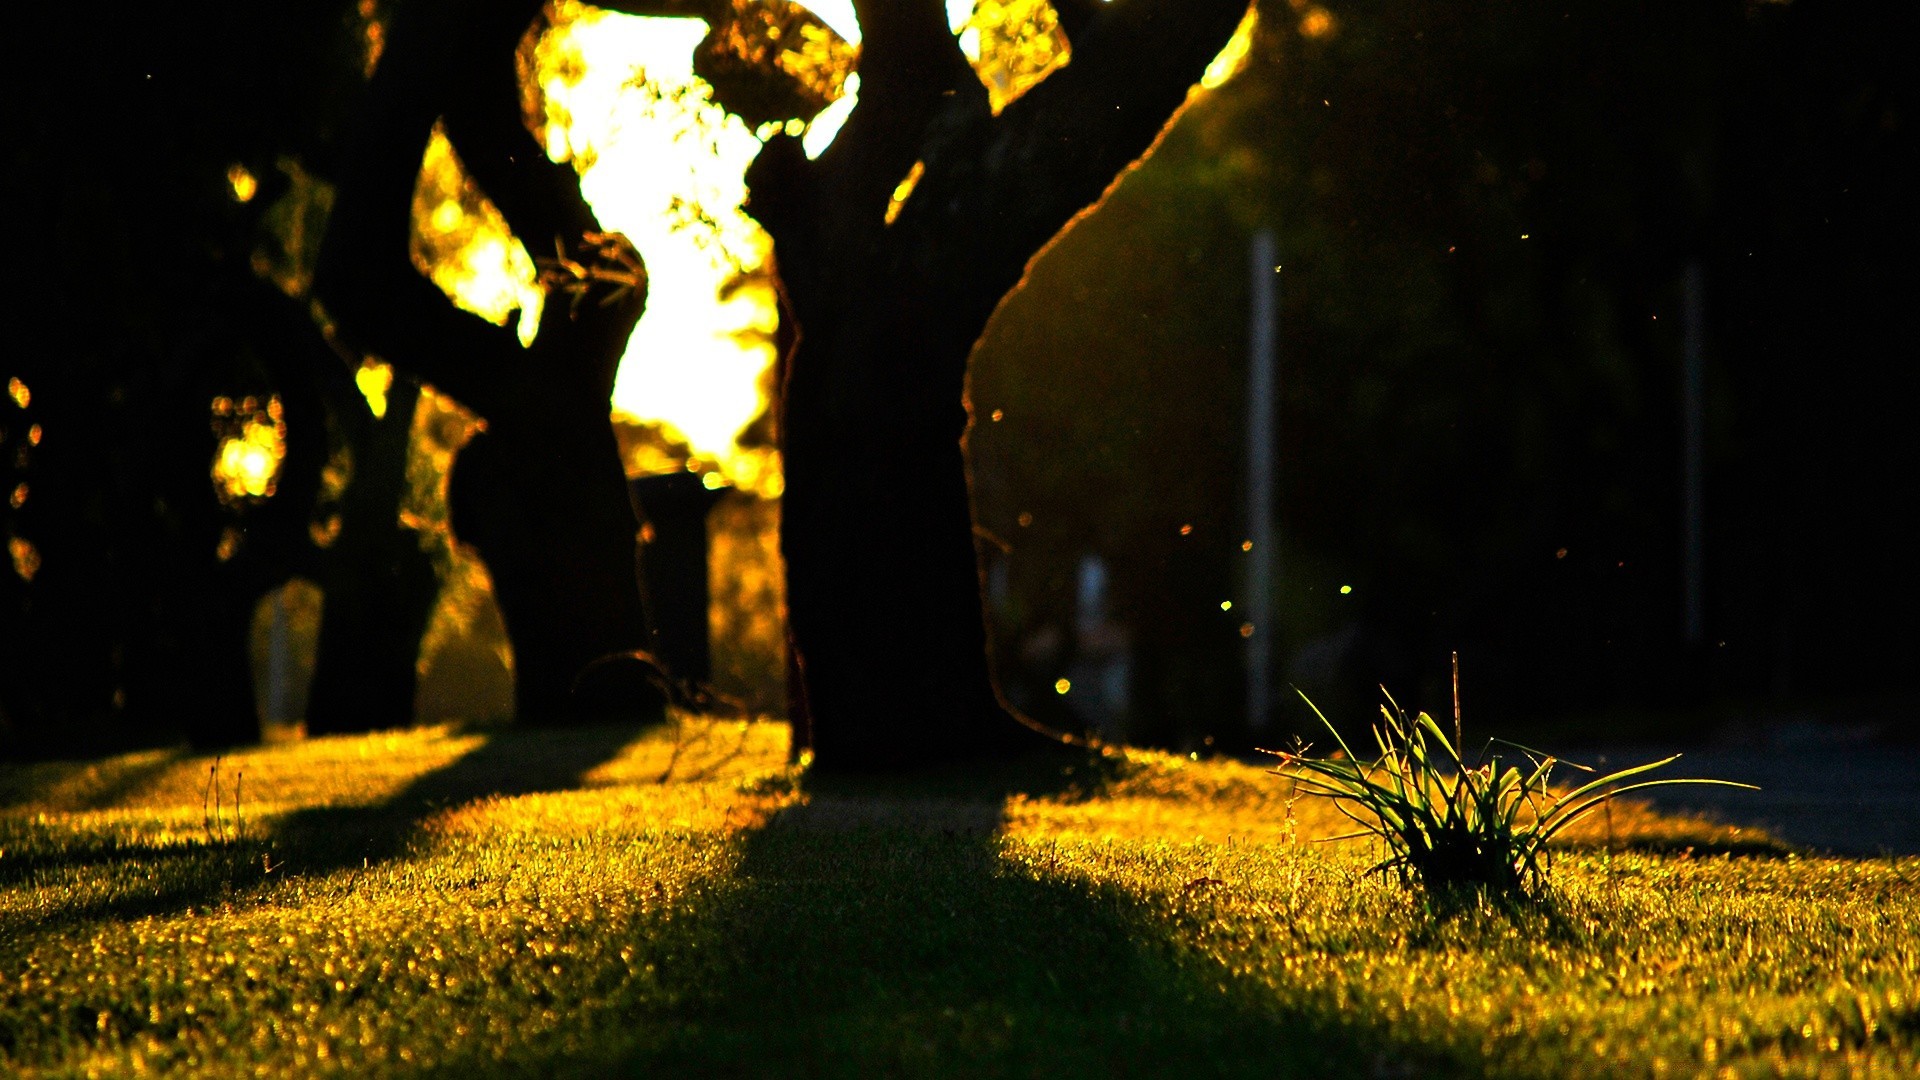 пейзажи свет парк осень золото пейзаж кладбище дерево закат подсветкой трава солнце природа на открытом воздухе цветок тень размытость вечером рассвет сад